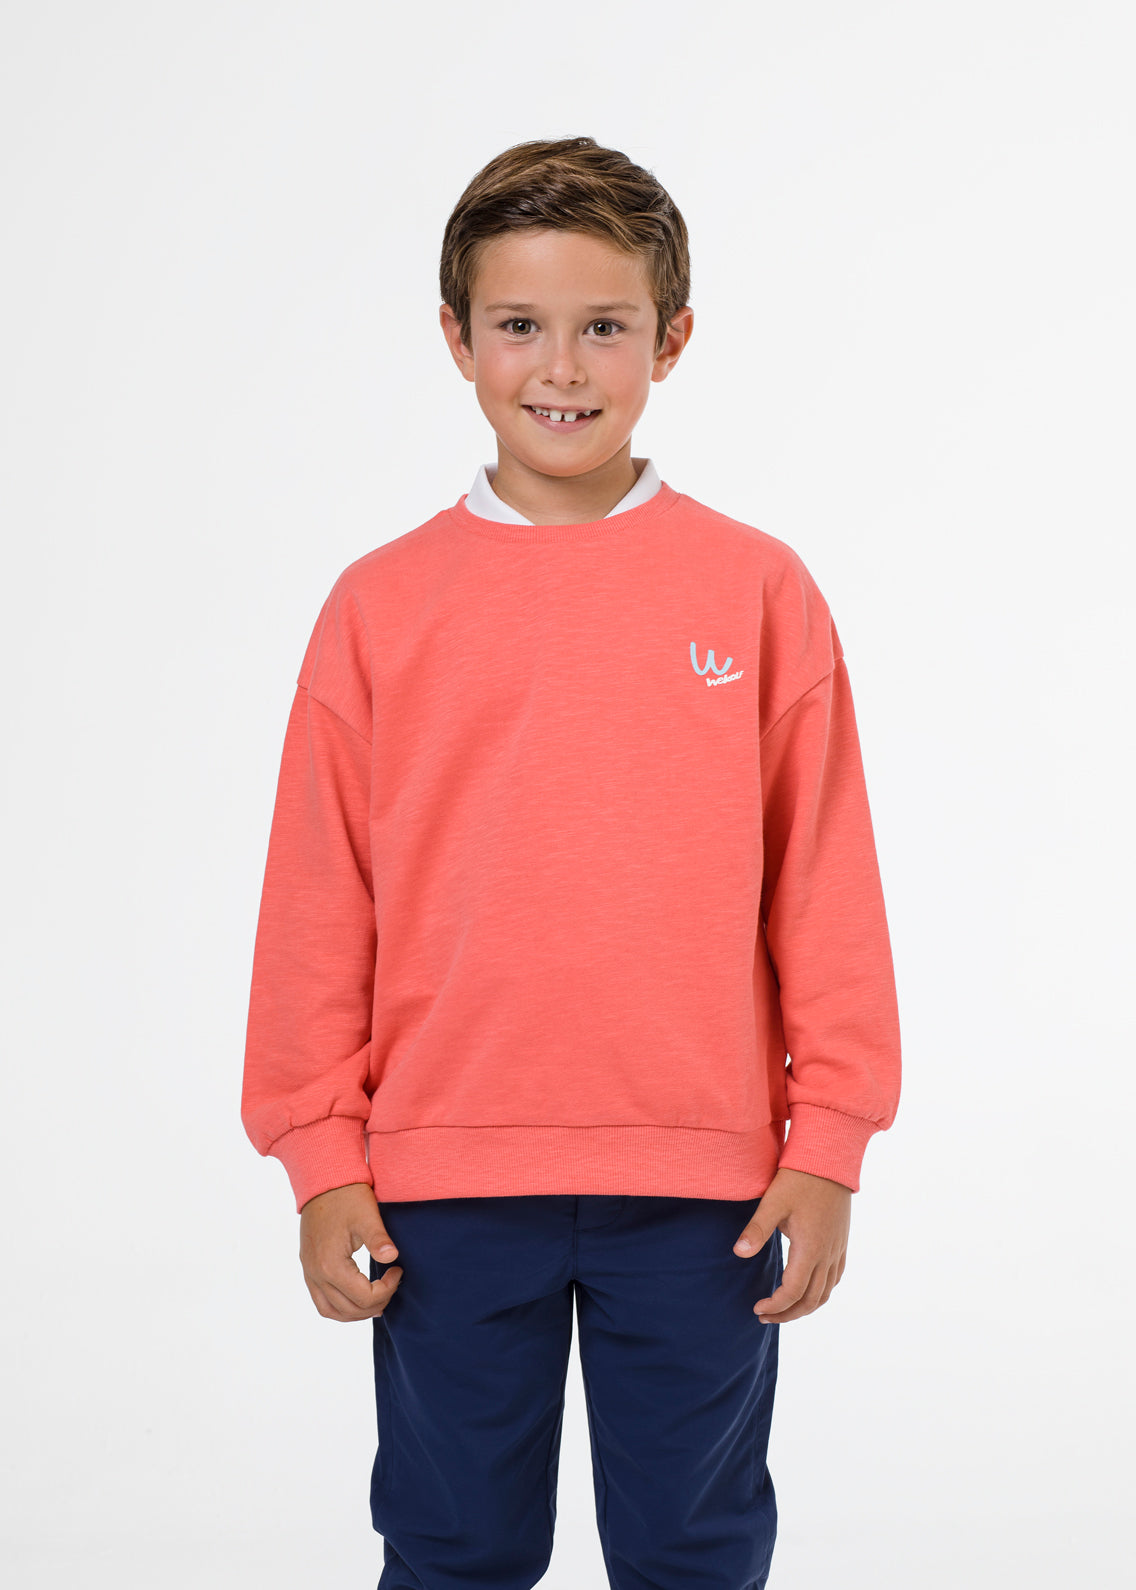 Coral golf sweatshirt for boys